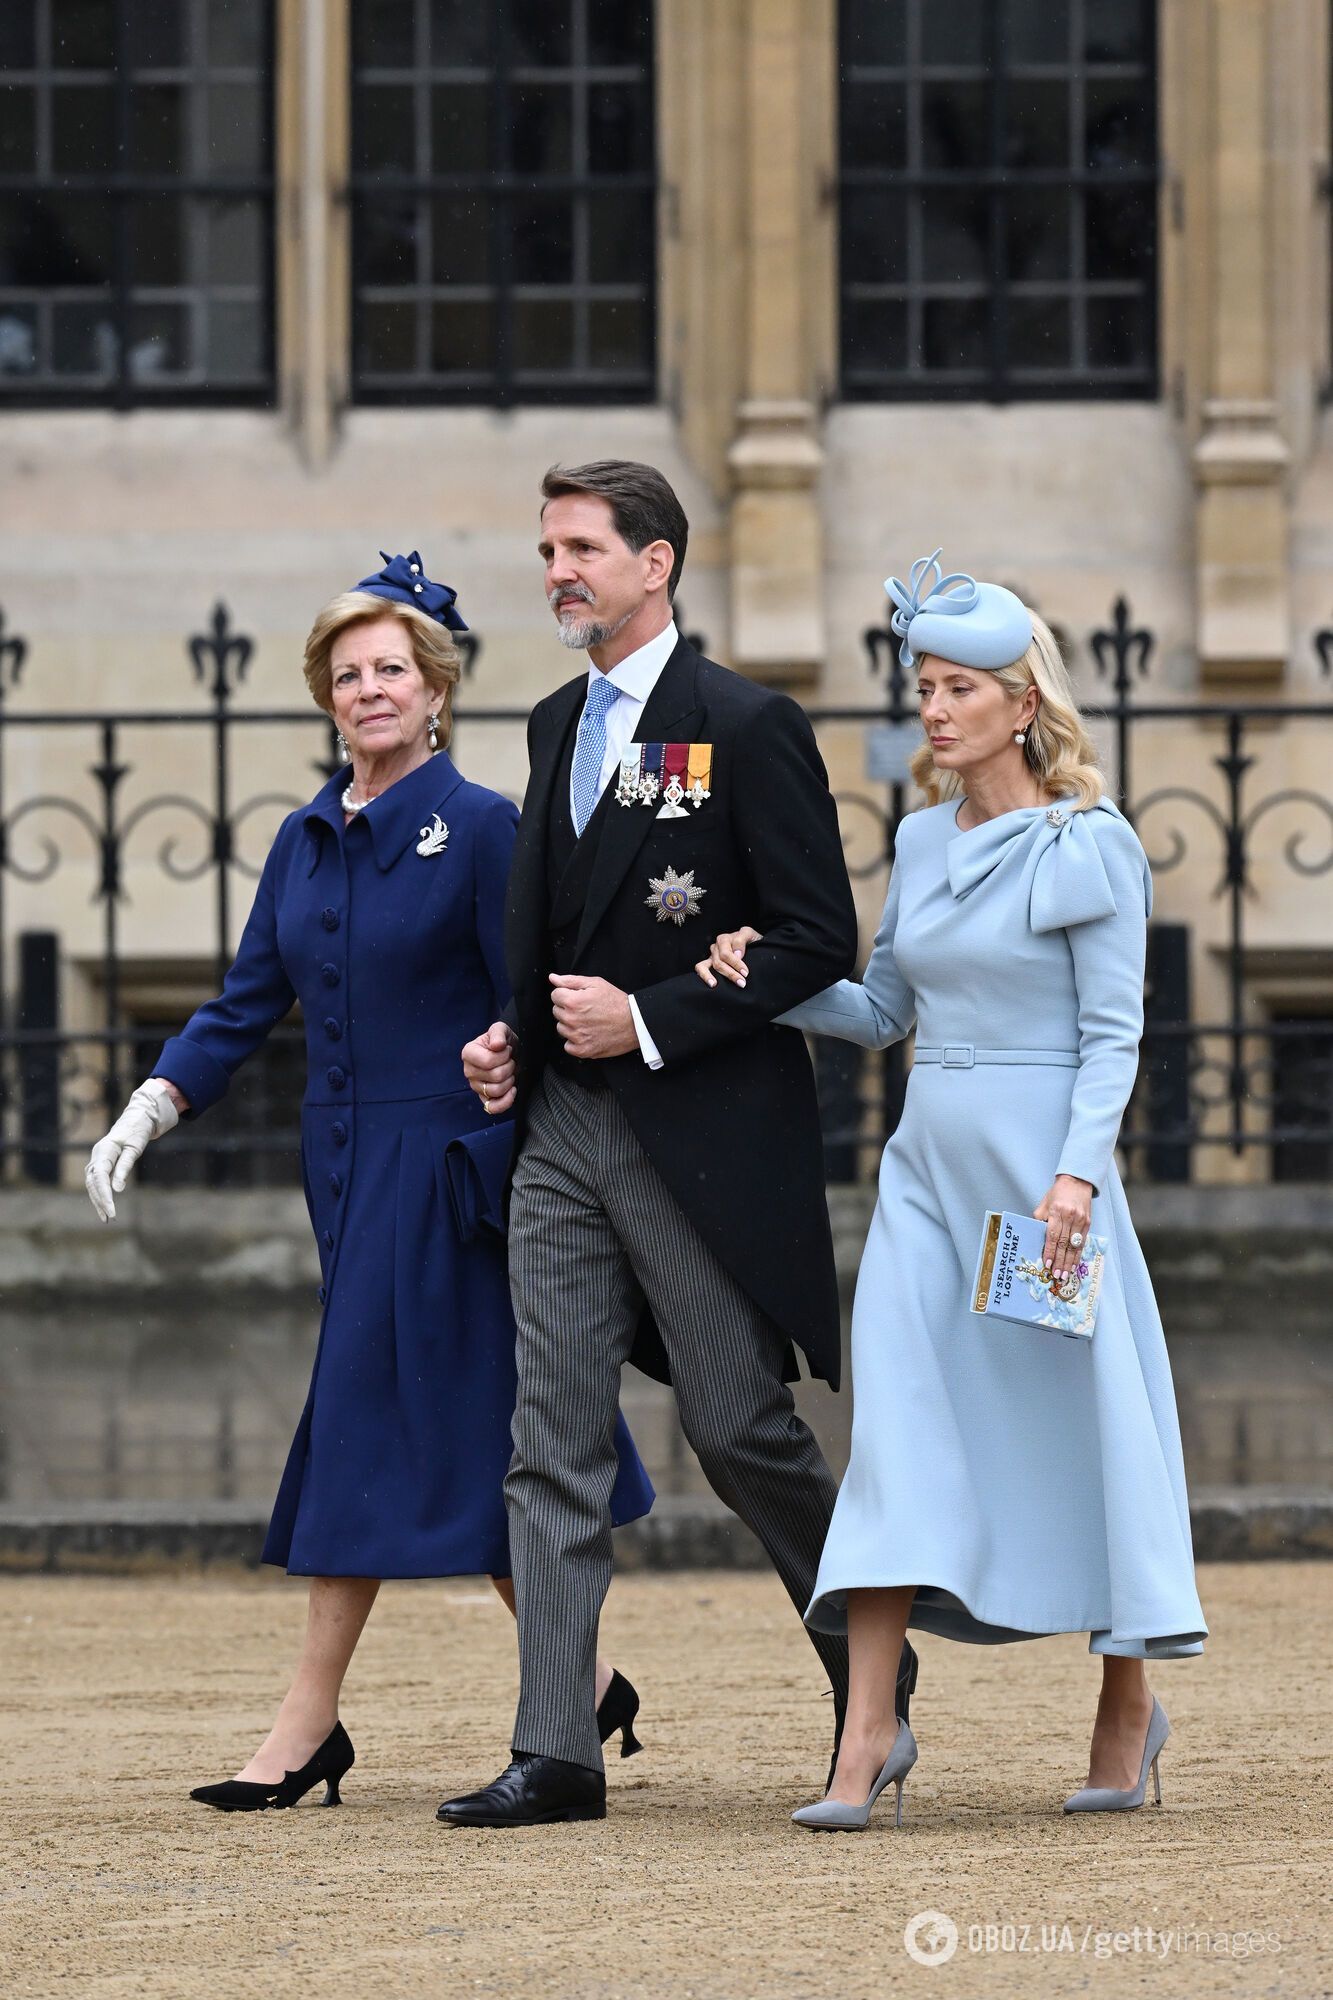 Уникальные платья, драгоценные подвески и необычные шляпки: как оделись на коронацию Чарльза ІІІ монаршие лица из других стран